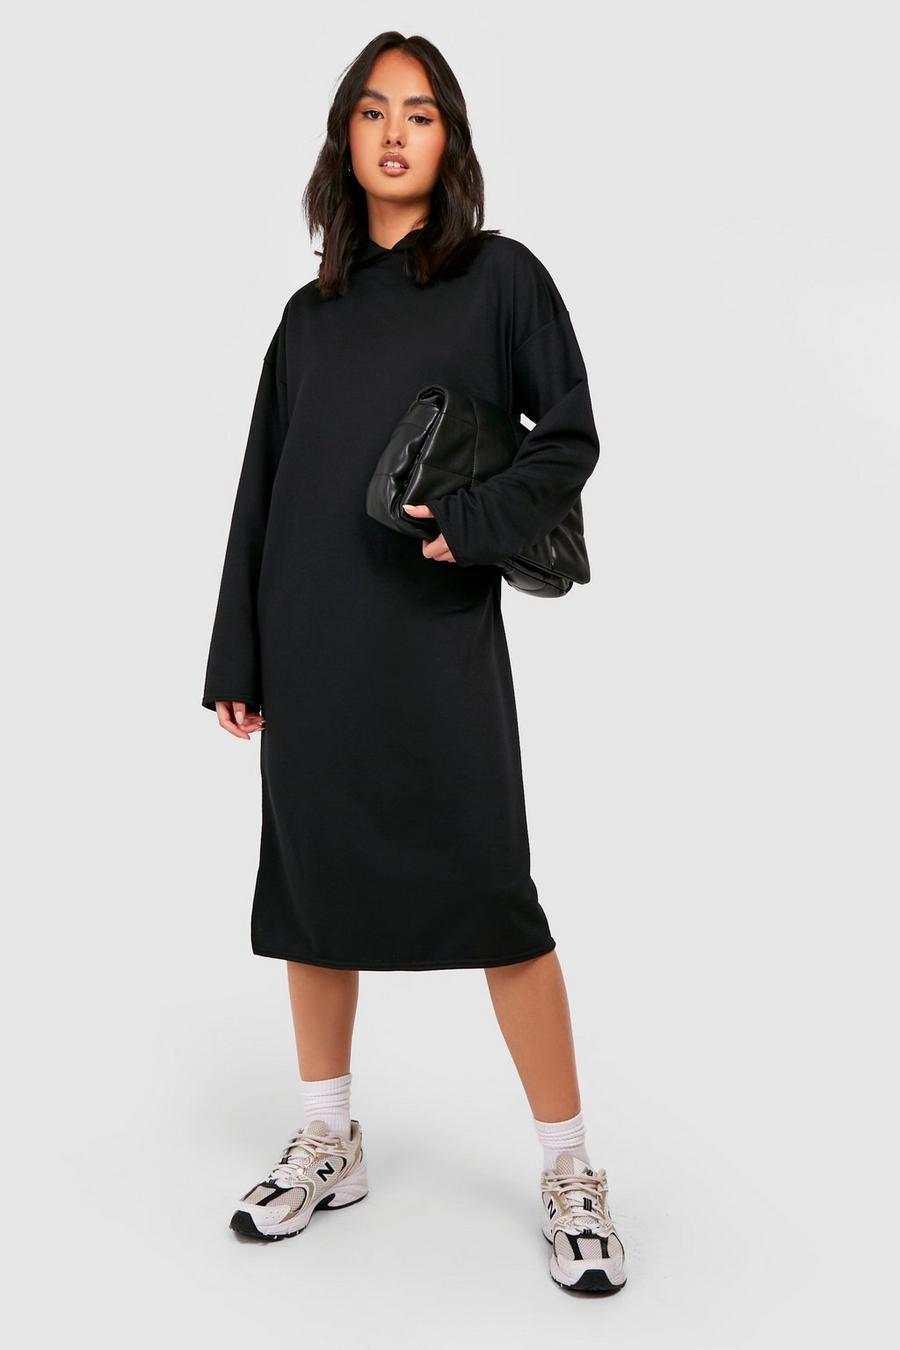 Black Oversized Longline Hooded Sweatshirt Dress